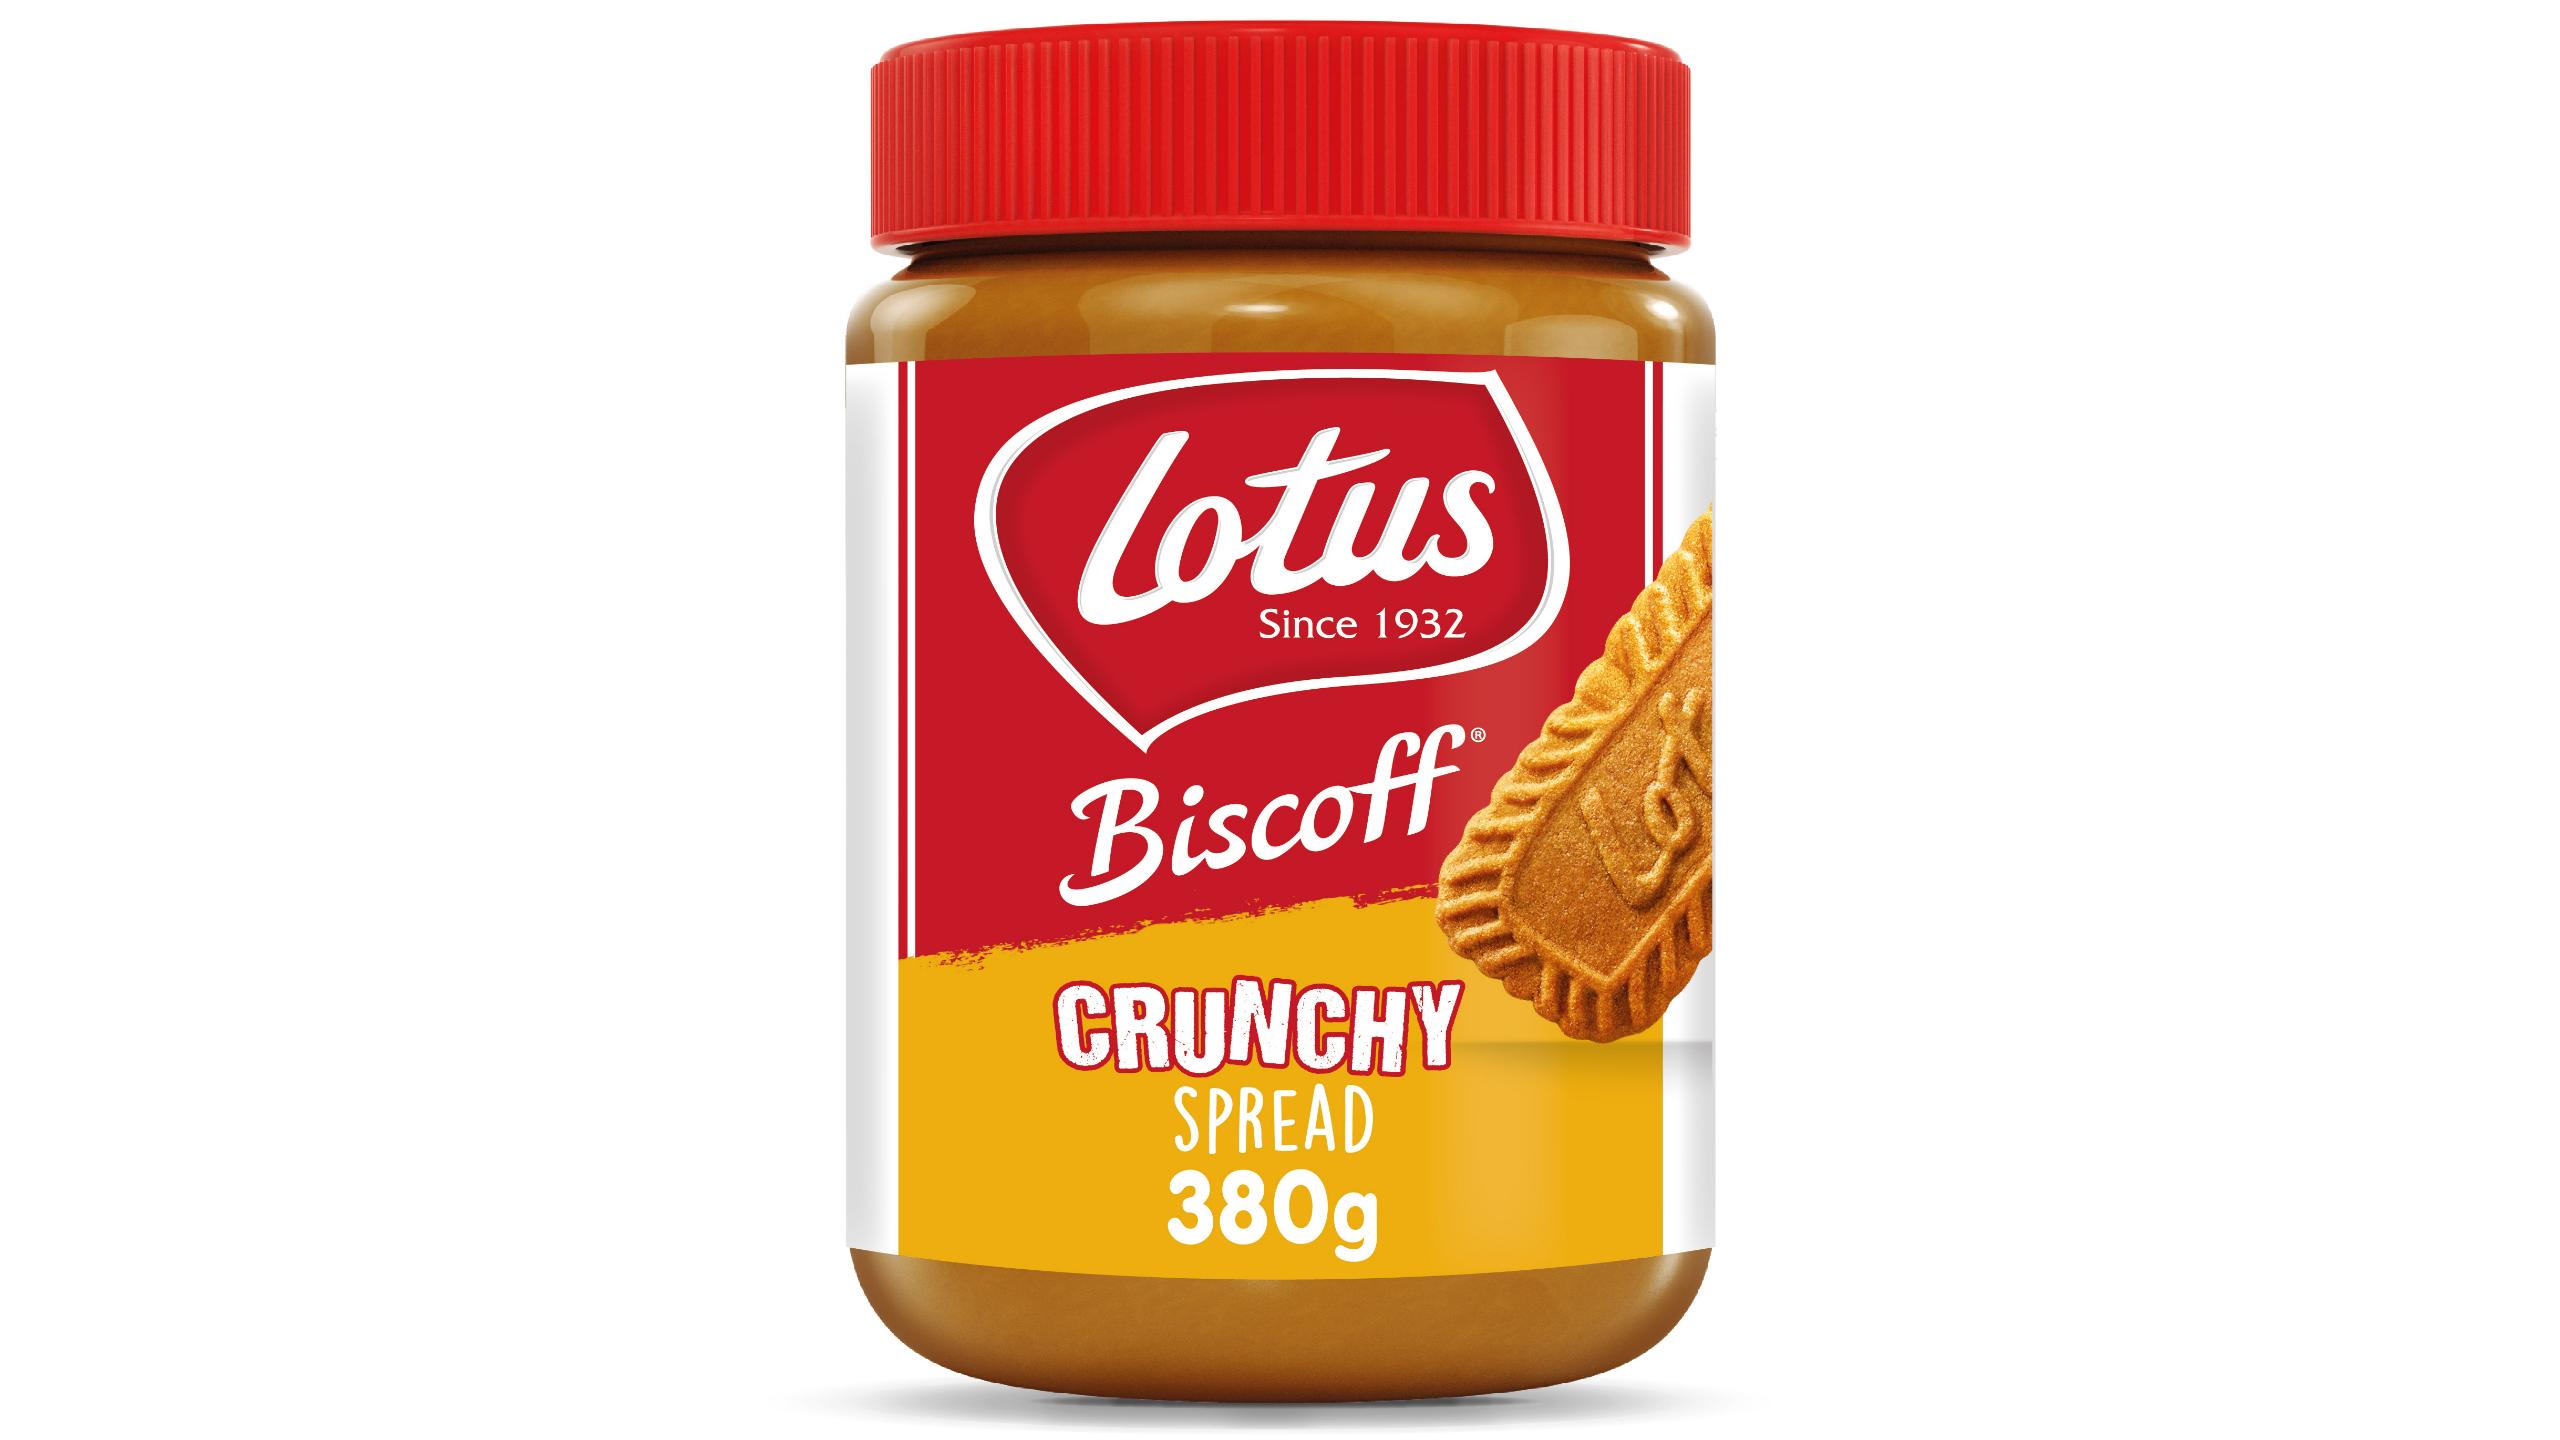 Lotus Biscoff Crunchy Spread 380g